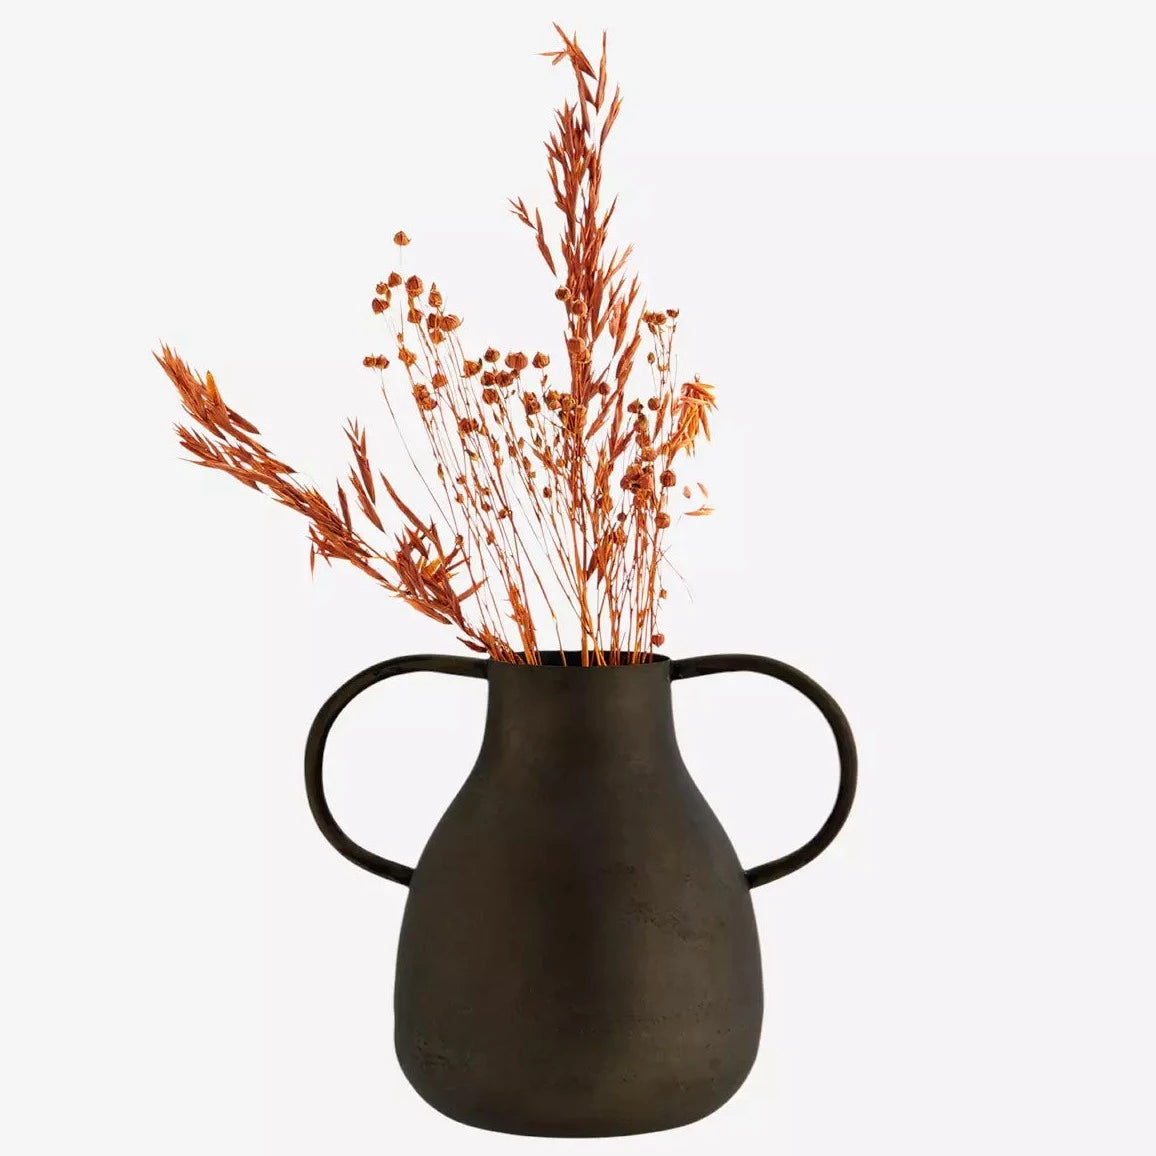 Iron vase with handles